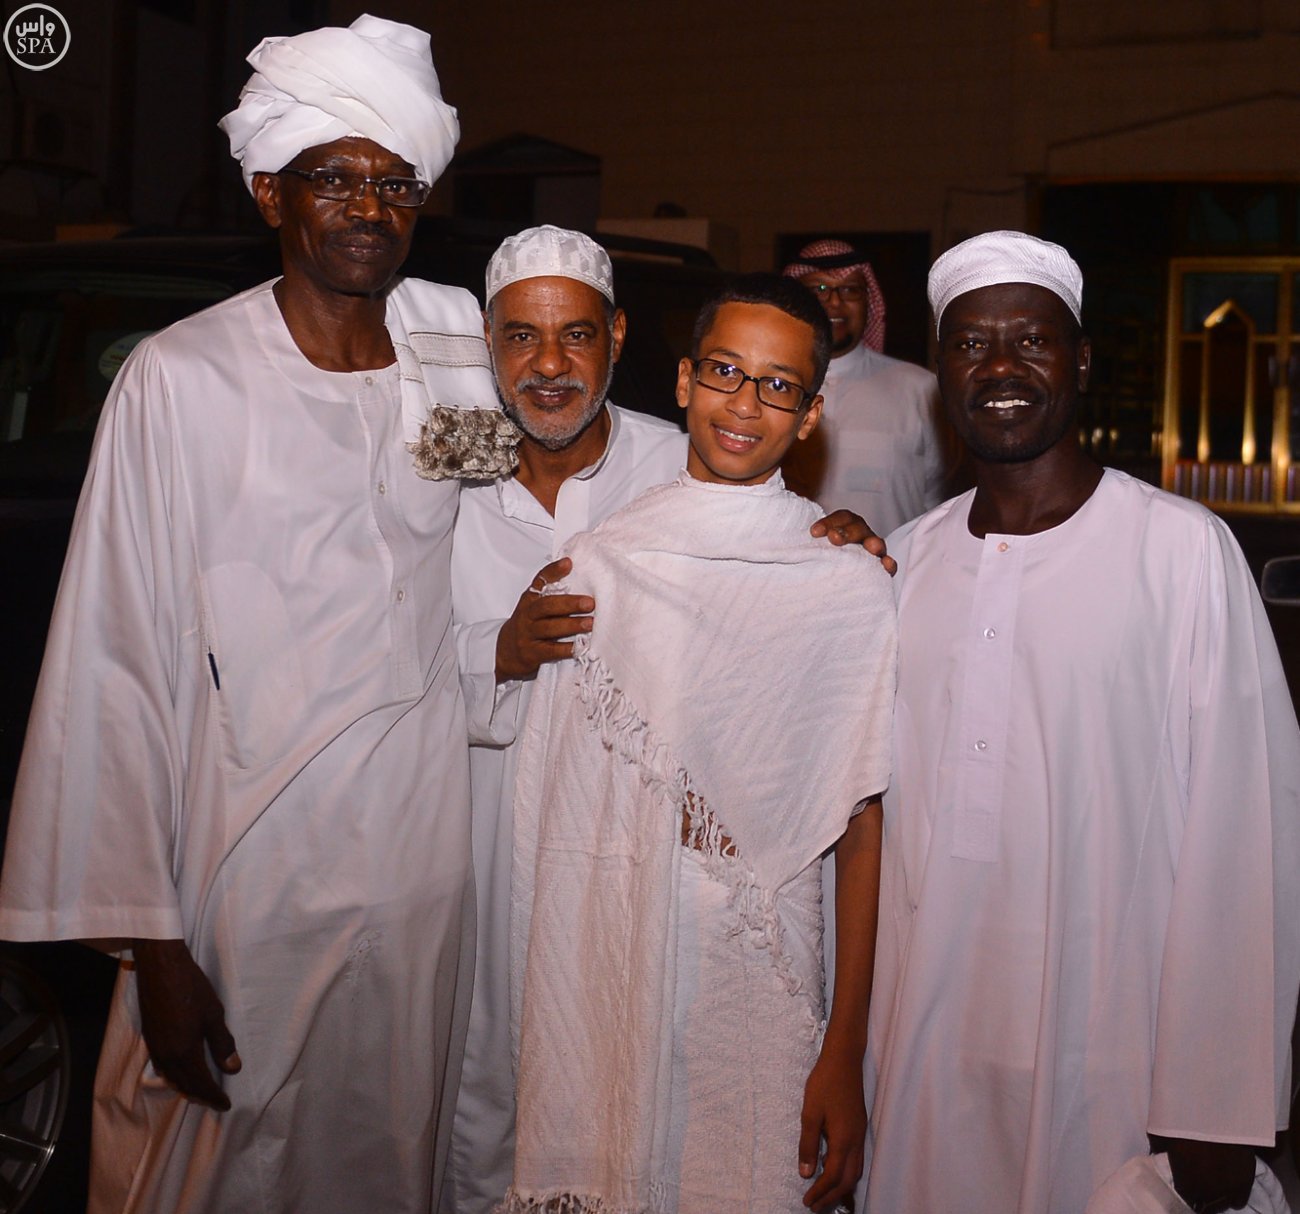 الطفل المخترع الأمريكي من أصل سوداني وعائلته يصلون #جدة لأداء العمرة - المواطن